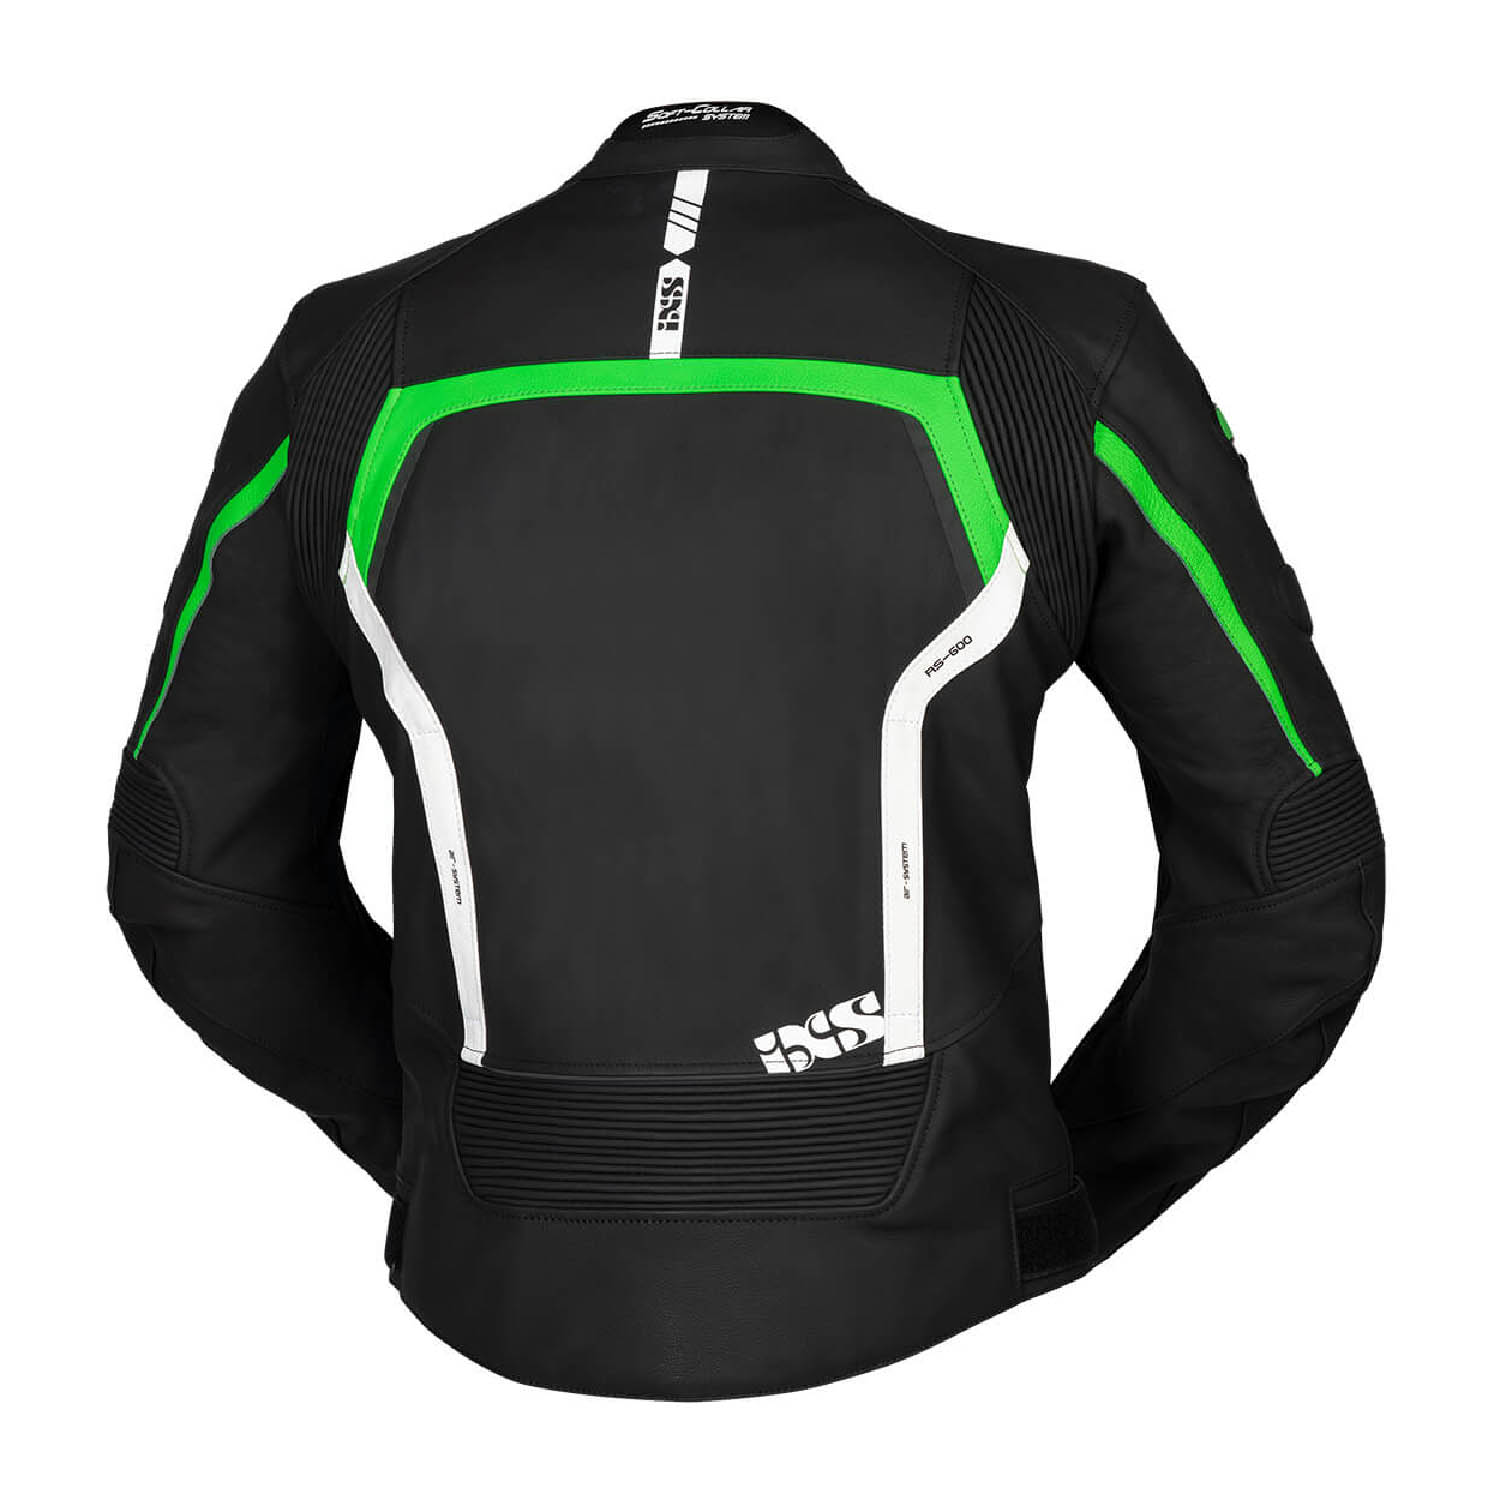 Спортивная куртка кожаная IXS SPORTS LD RS-600 цвет черно-зелёный вид сзади для мотоциклистов купить по низкой цене